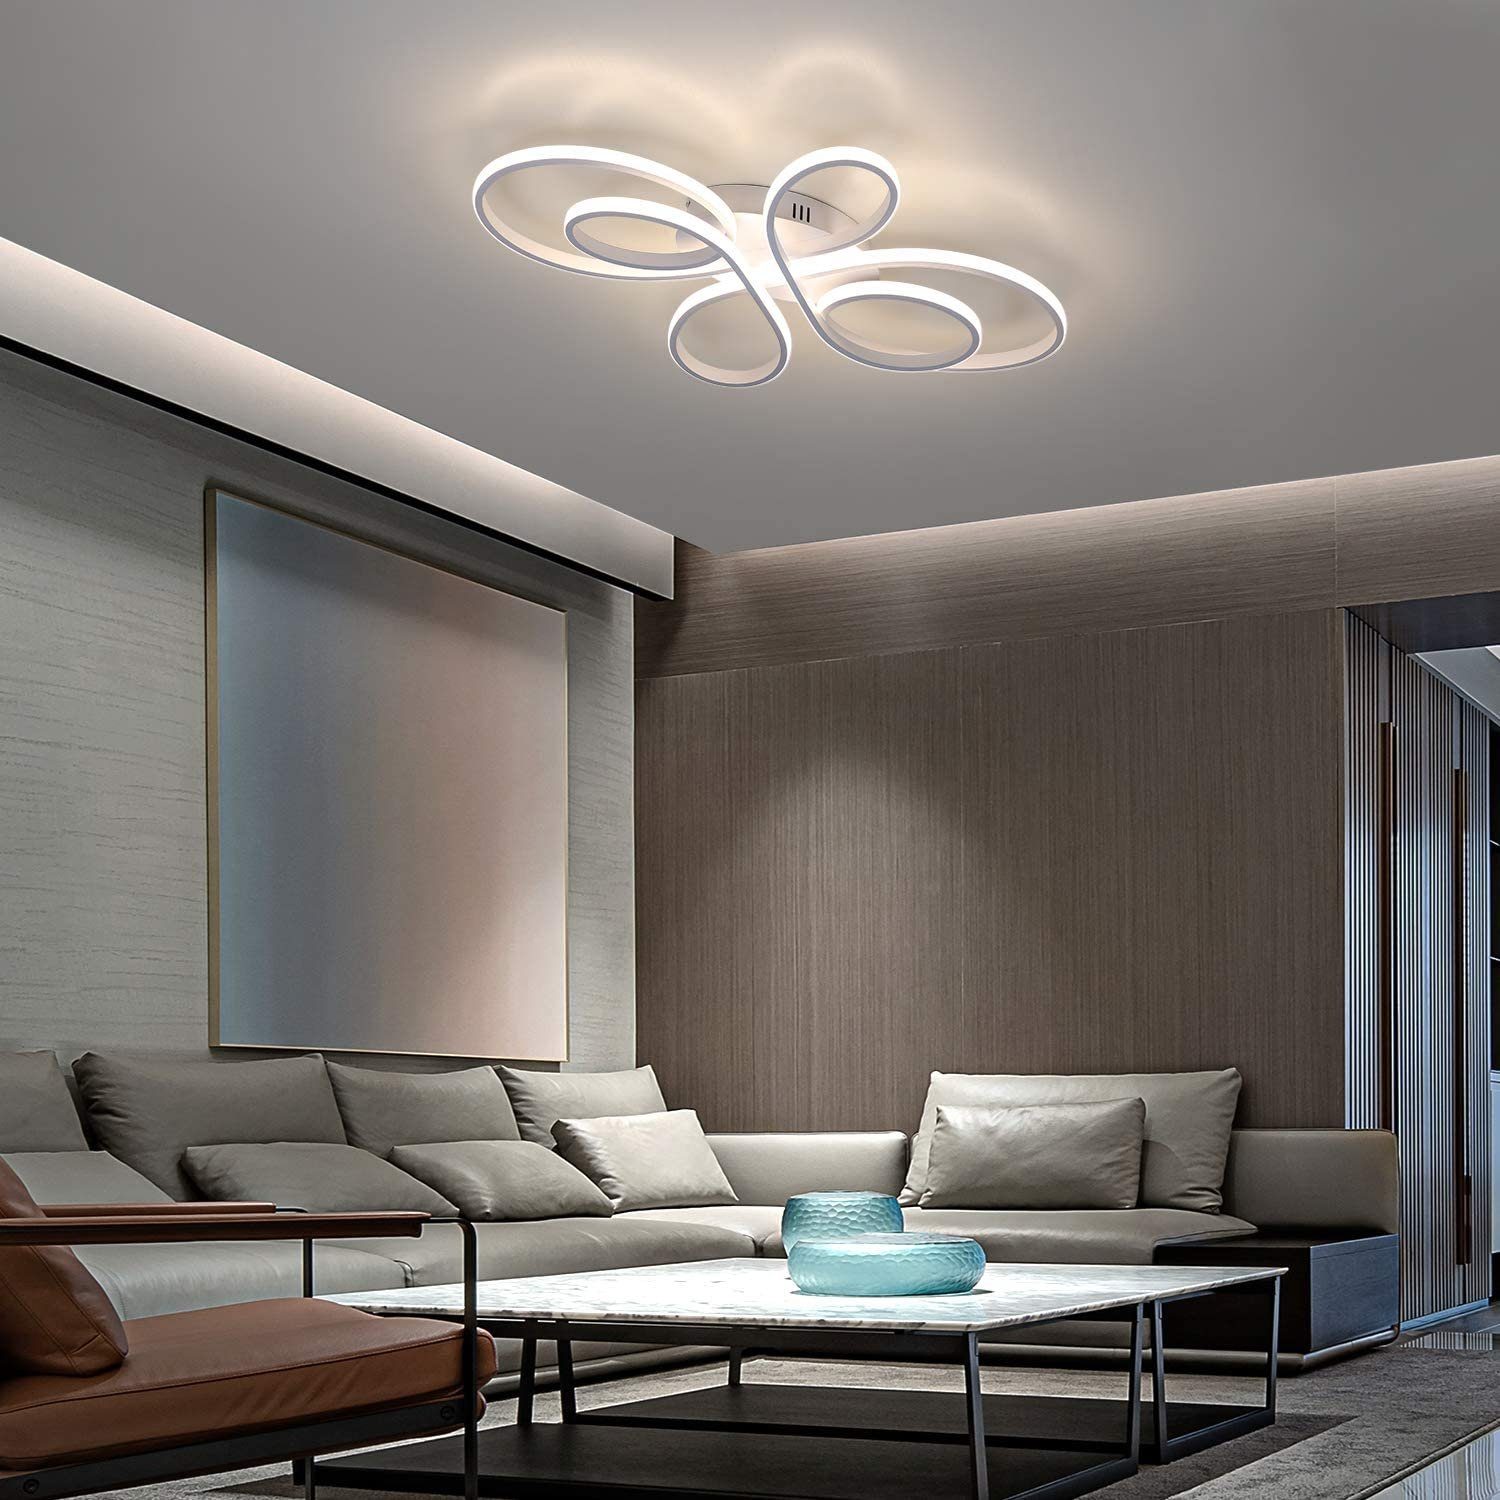 ZMH LED Deckenleuchte Wohnzimmer Moderne LED Deckenlampe schwarz Dimmbar mit Fernbedienung 65 Watt aus Metall in Schmetterlingforming Design für Schlafzimmer 